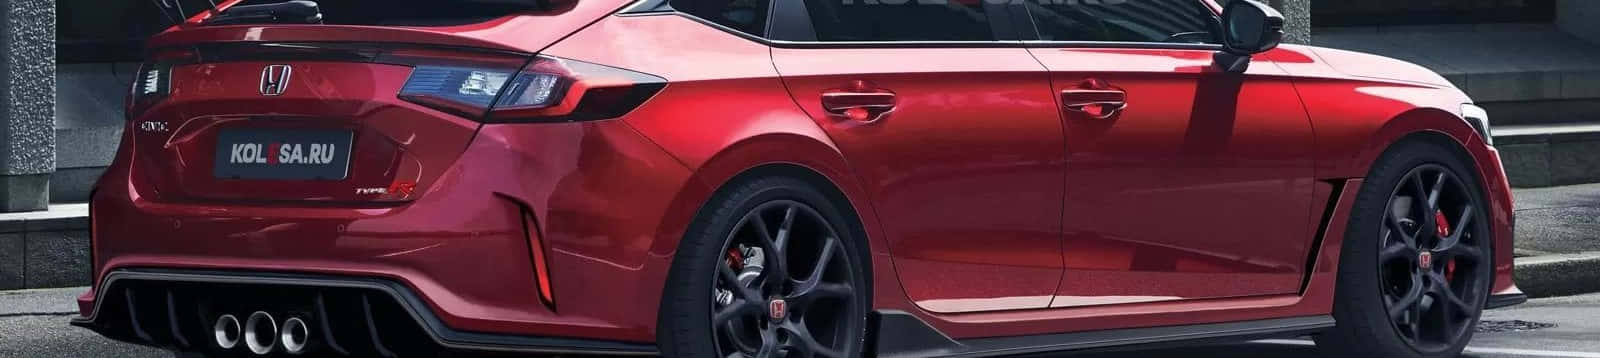 Sleek Red Hatchback on Road Wallpaper